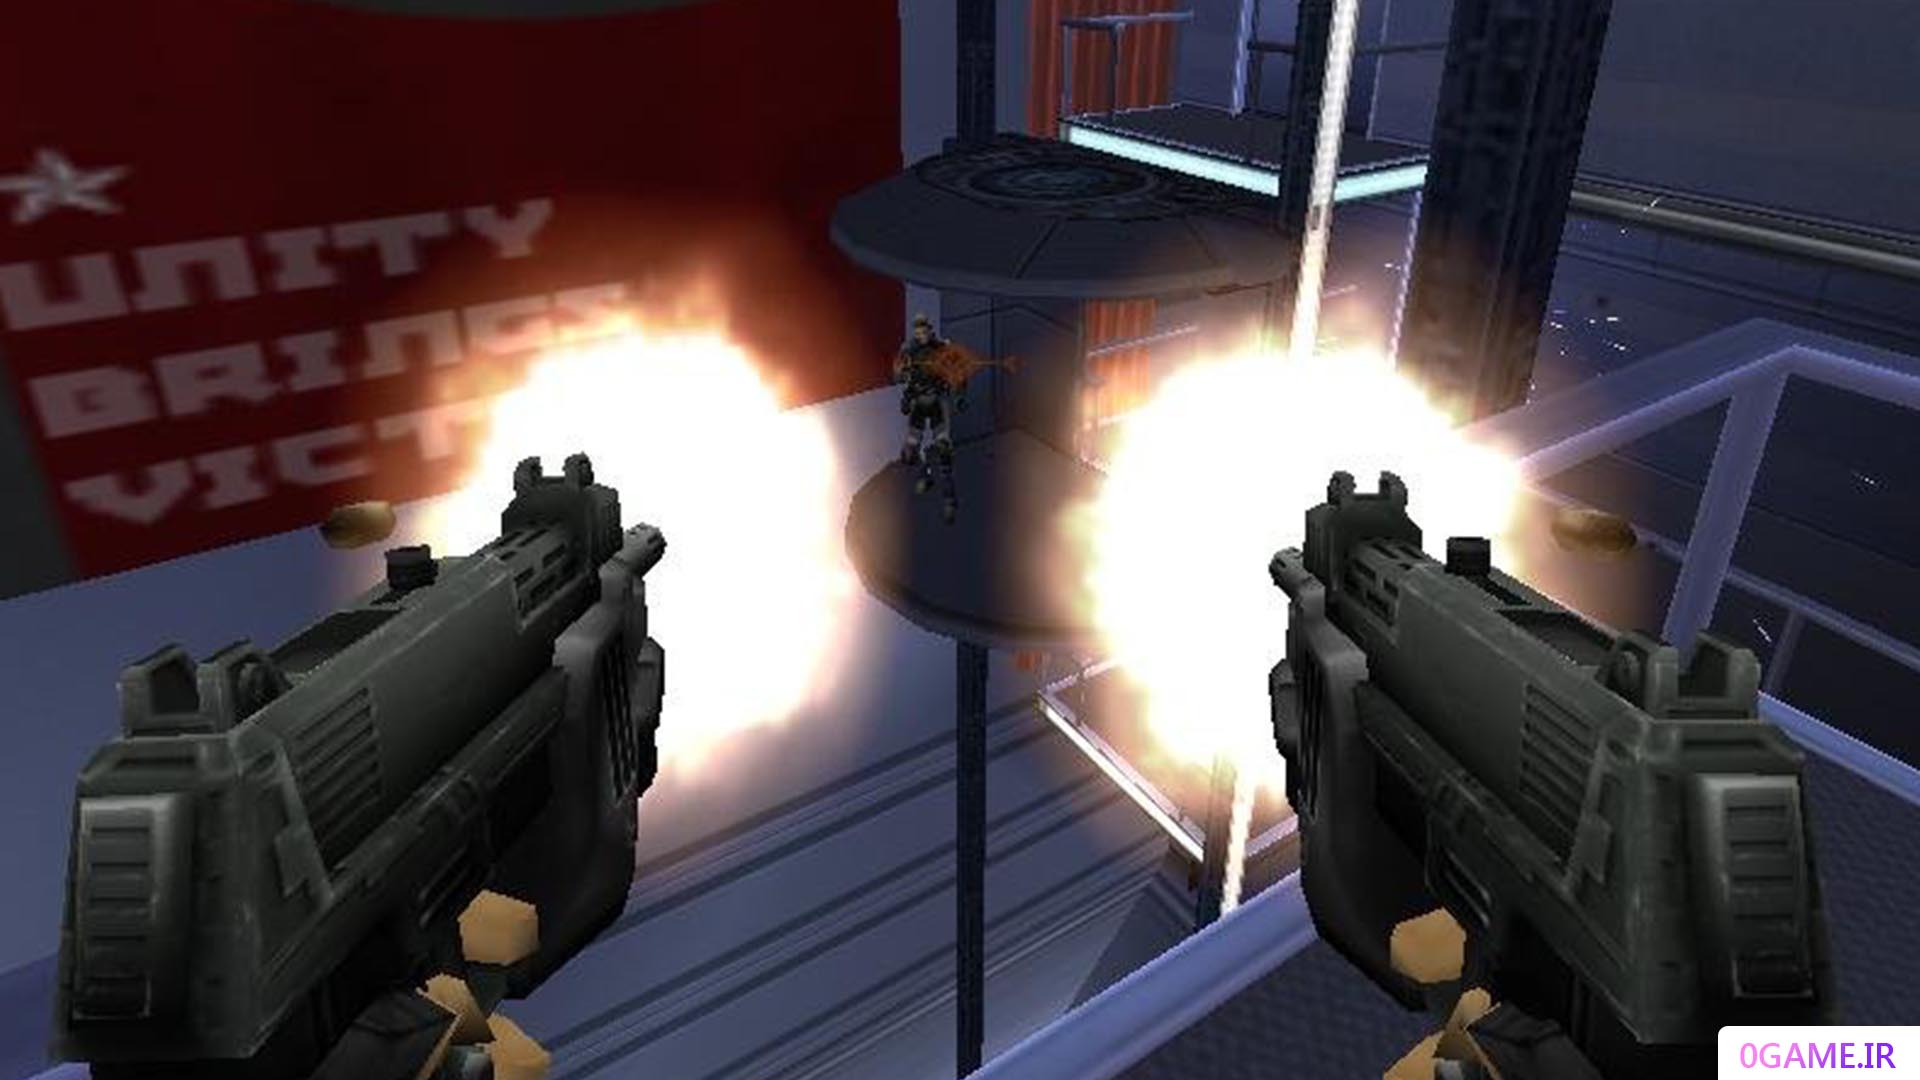 دانلود بازی جناح قرمز 2 (Red Faction II) نسخه کامل برای کامپیوتر